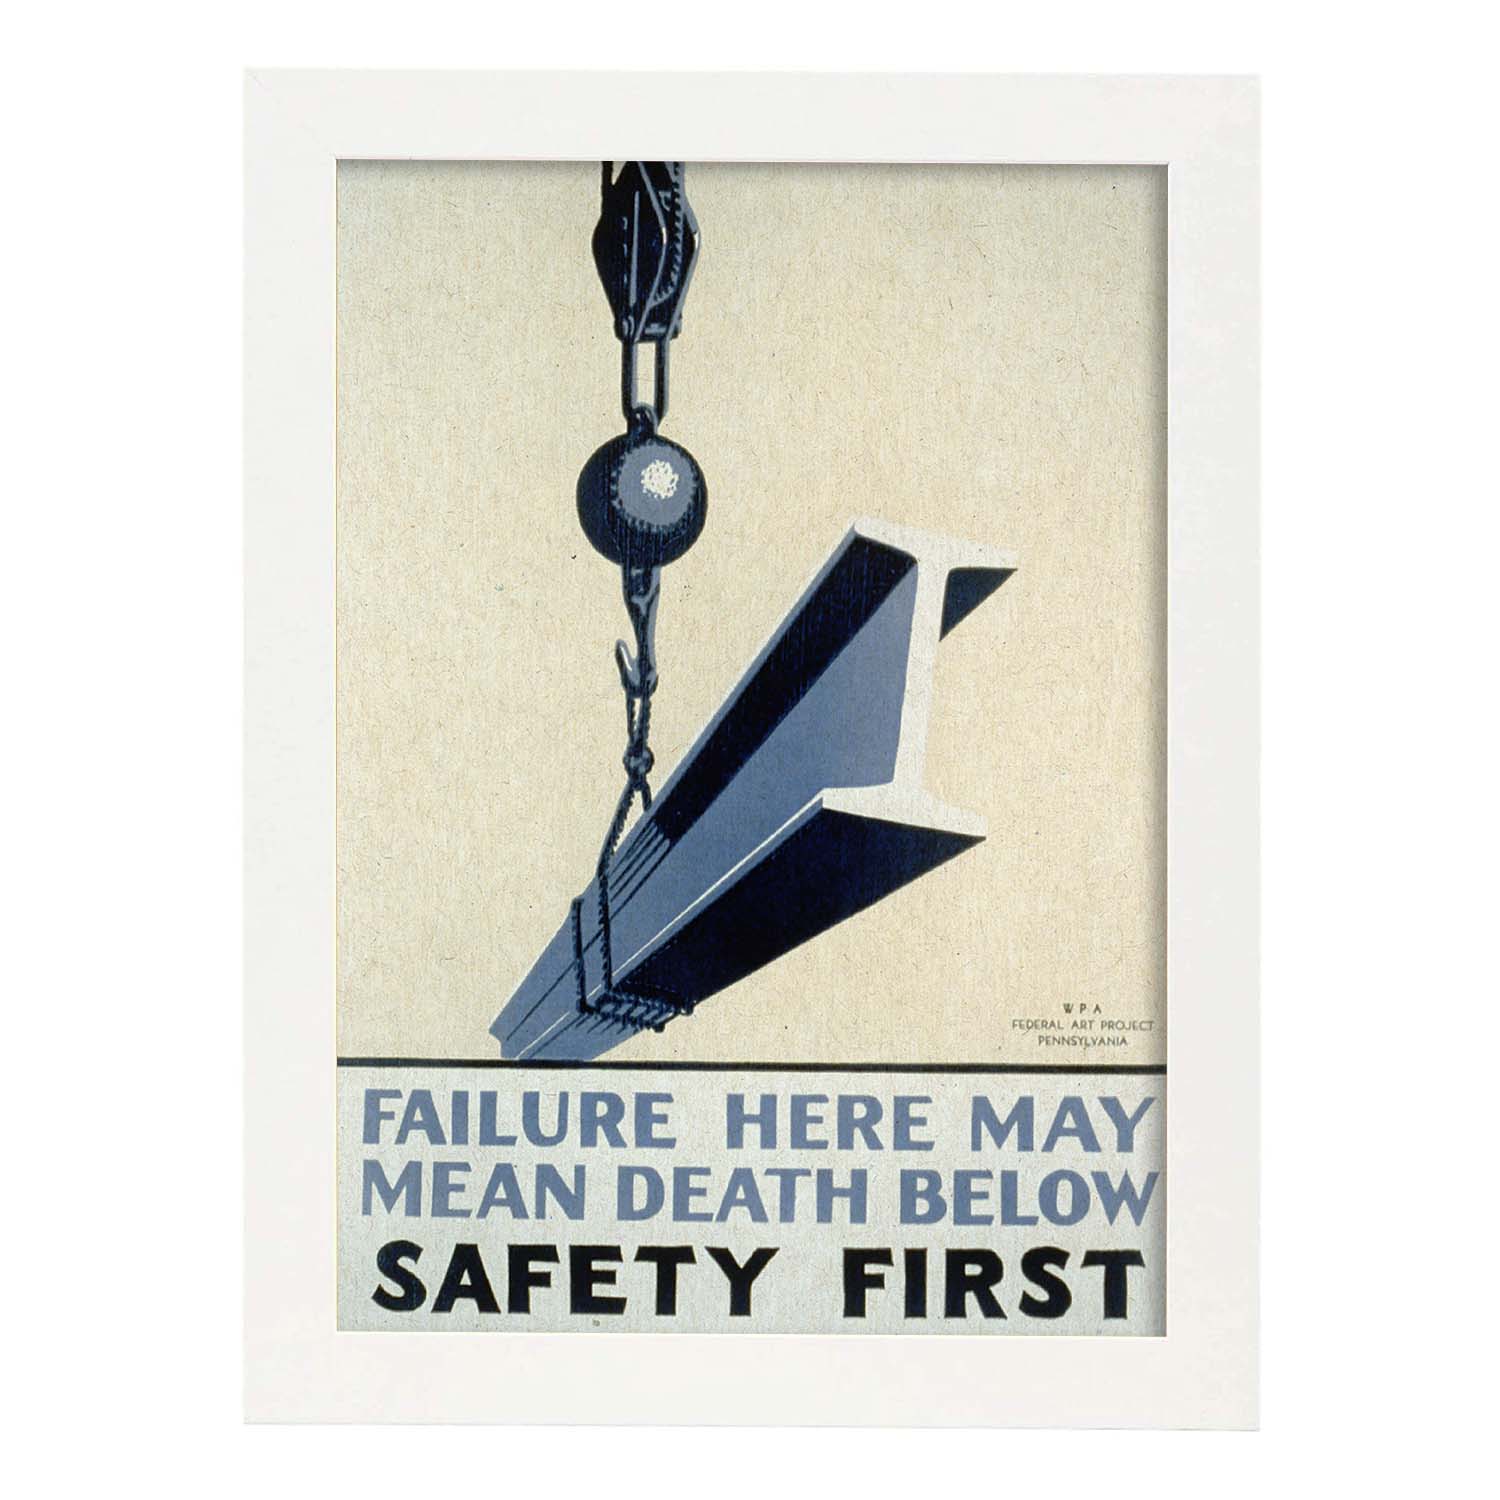 Poster vintage. Cartel vintage del departamento federal de Pennsylvania "Safety first".-Artwork-Nacnic-A3-Marco Blanco-Nacnic Estudio SL